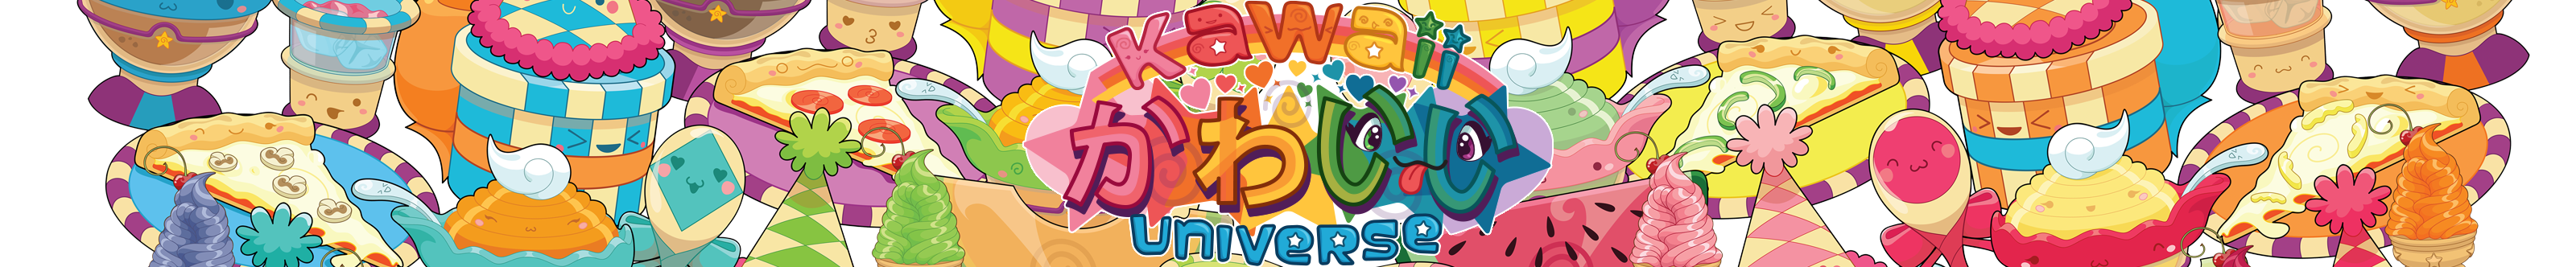 Profil-Banner von Kawaii Universe